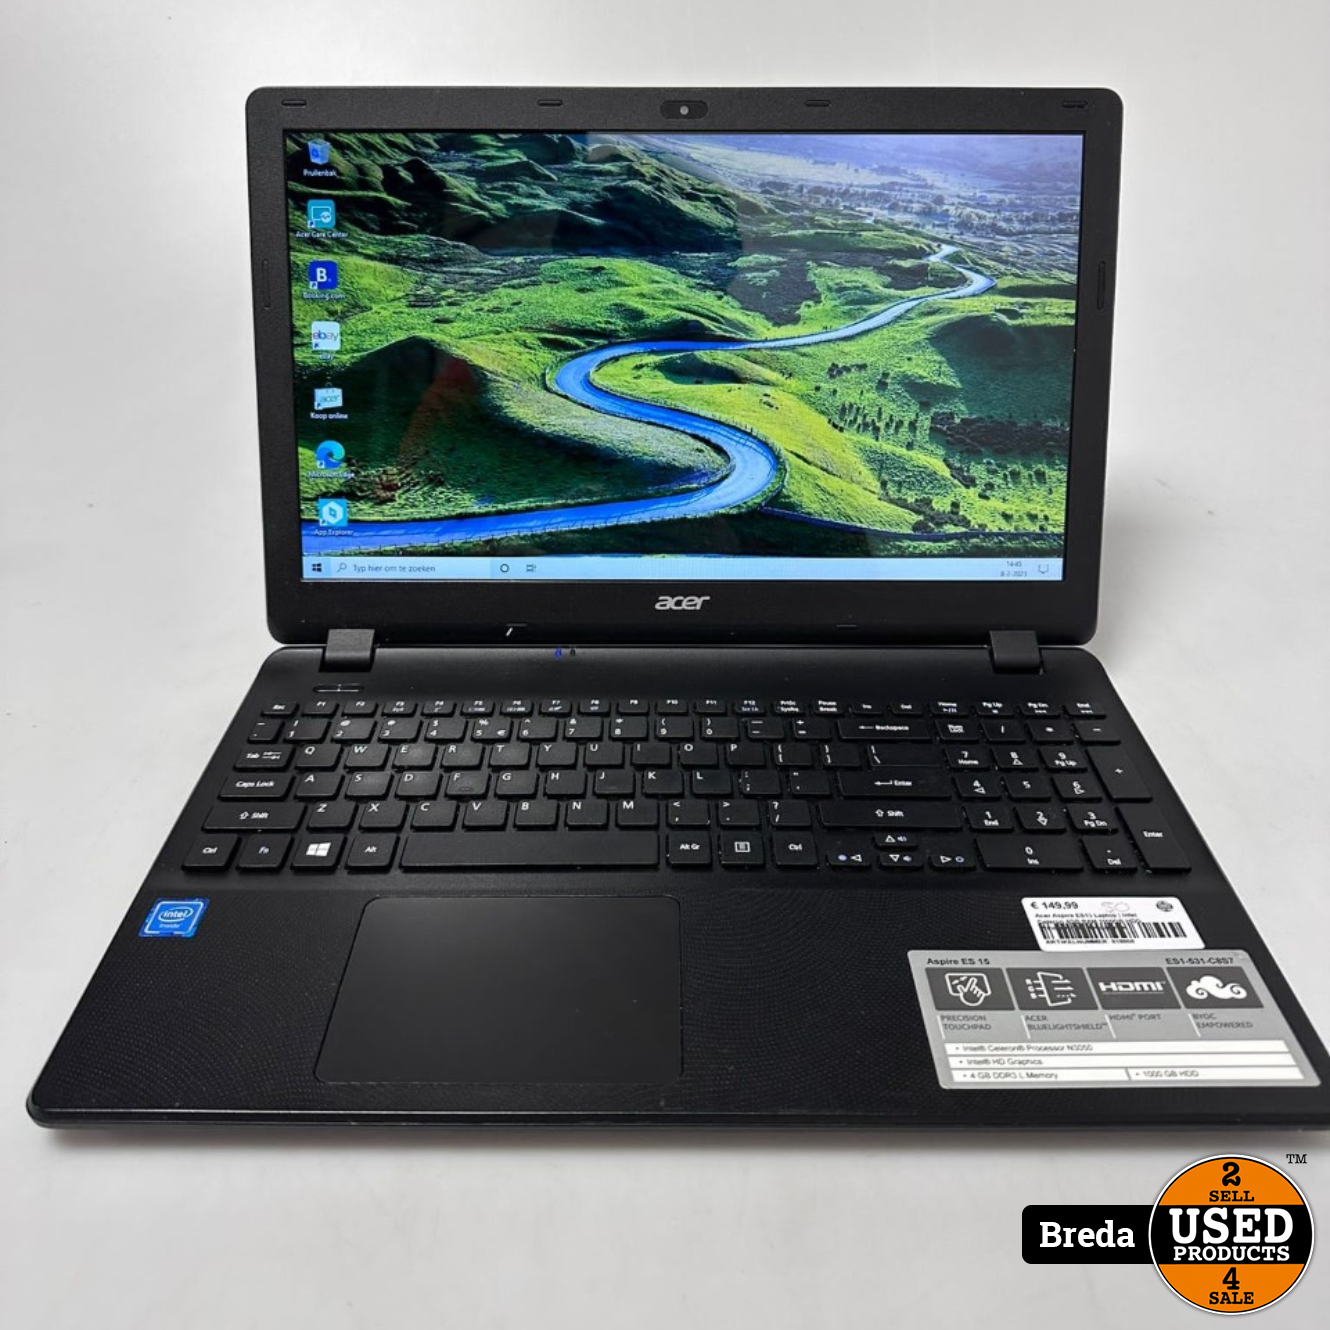 Acer Aspire ES1-531 Laptop | Intel Celeron N3050 4GB RAM 1TB HDD Intel HD Graphics Windows 10 | Met garantie - Used Breda